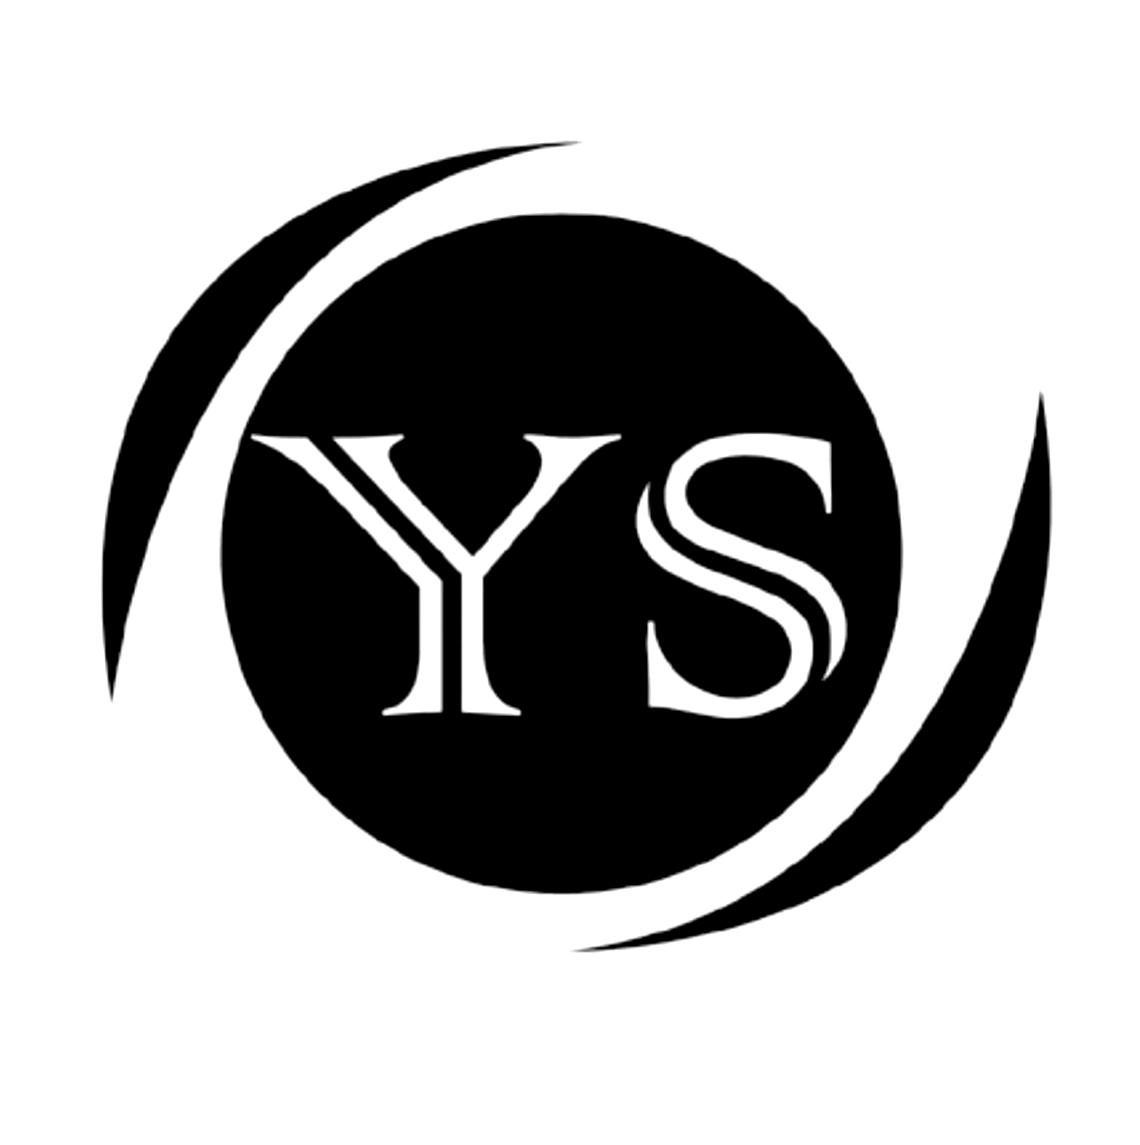 ys的logo设计图片图片